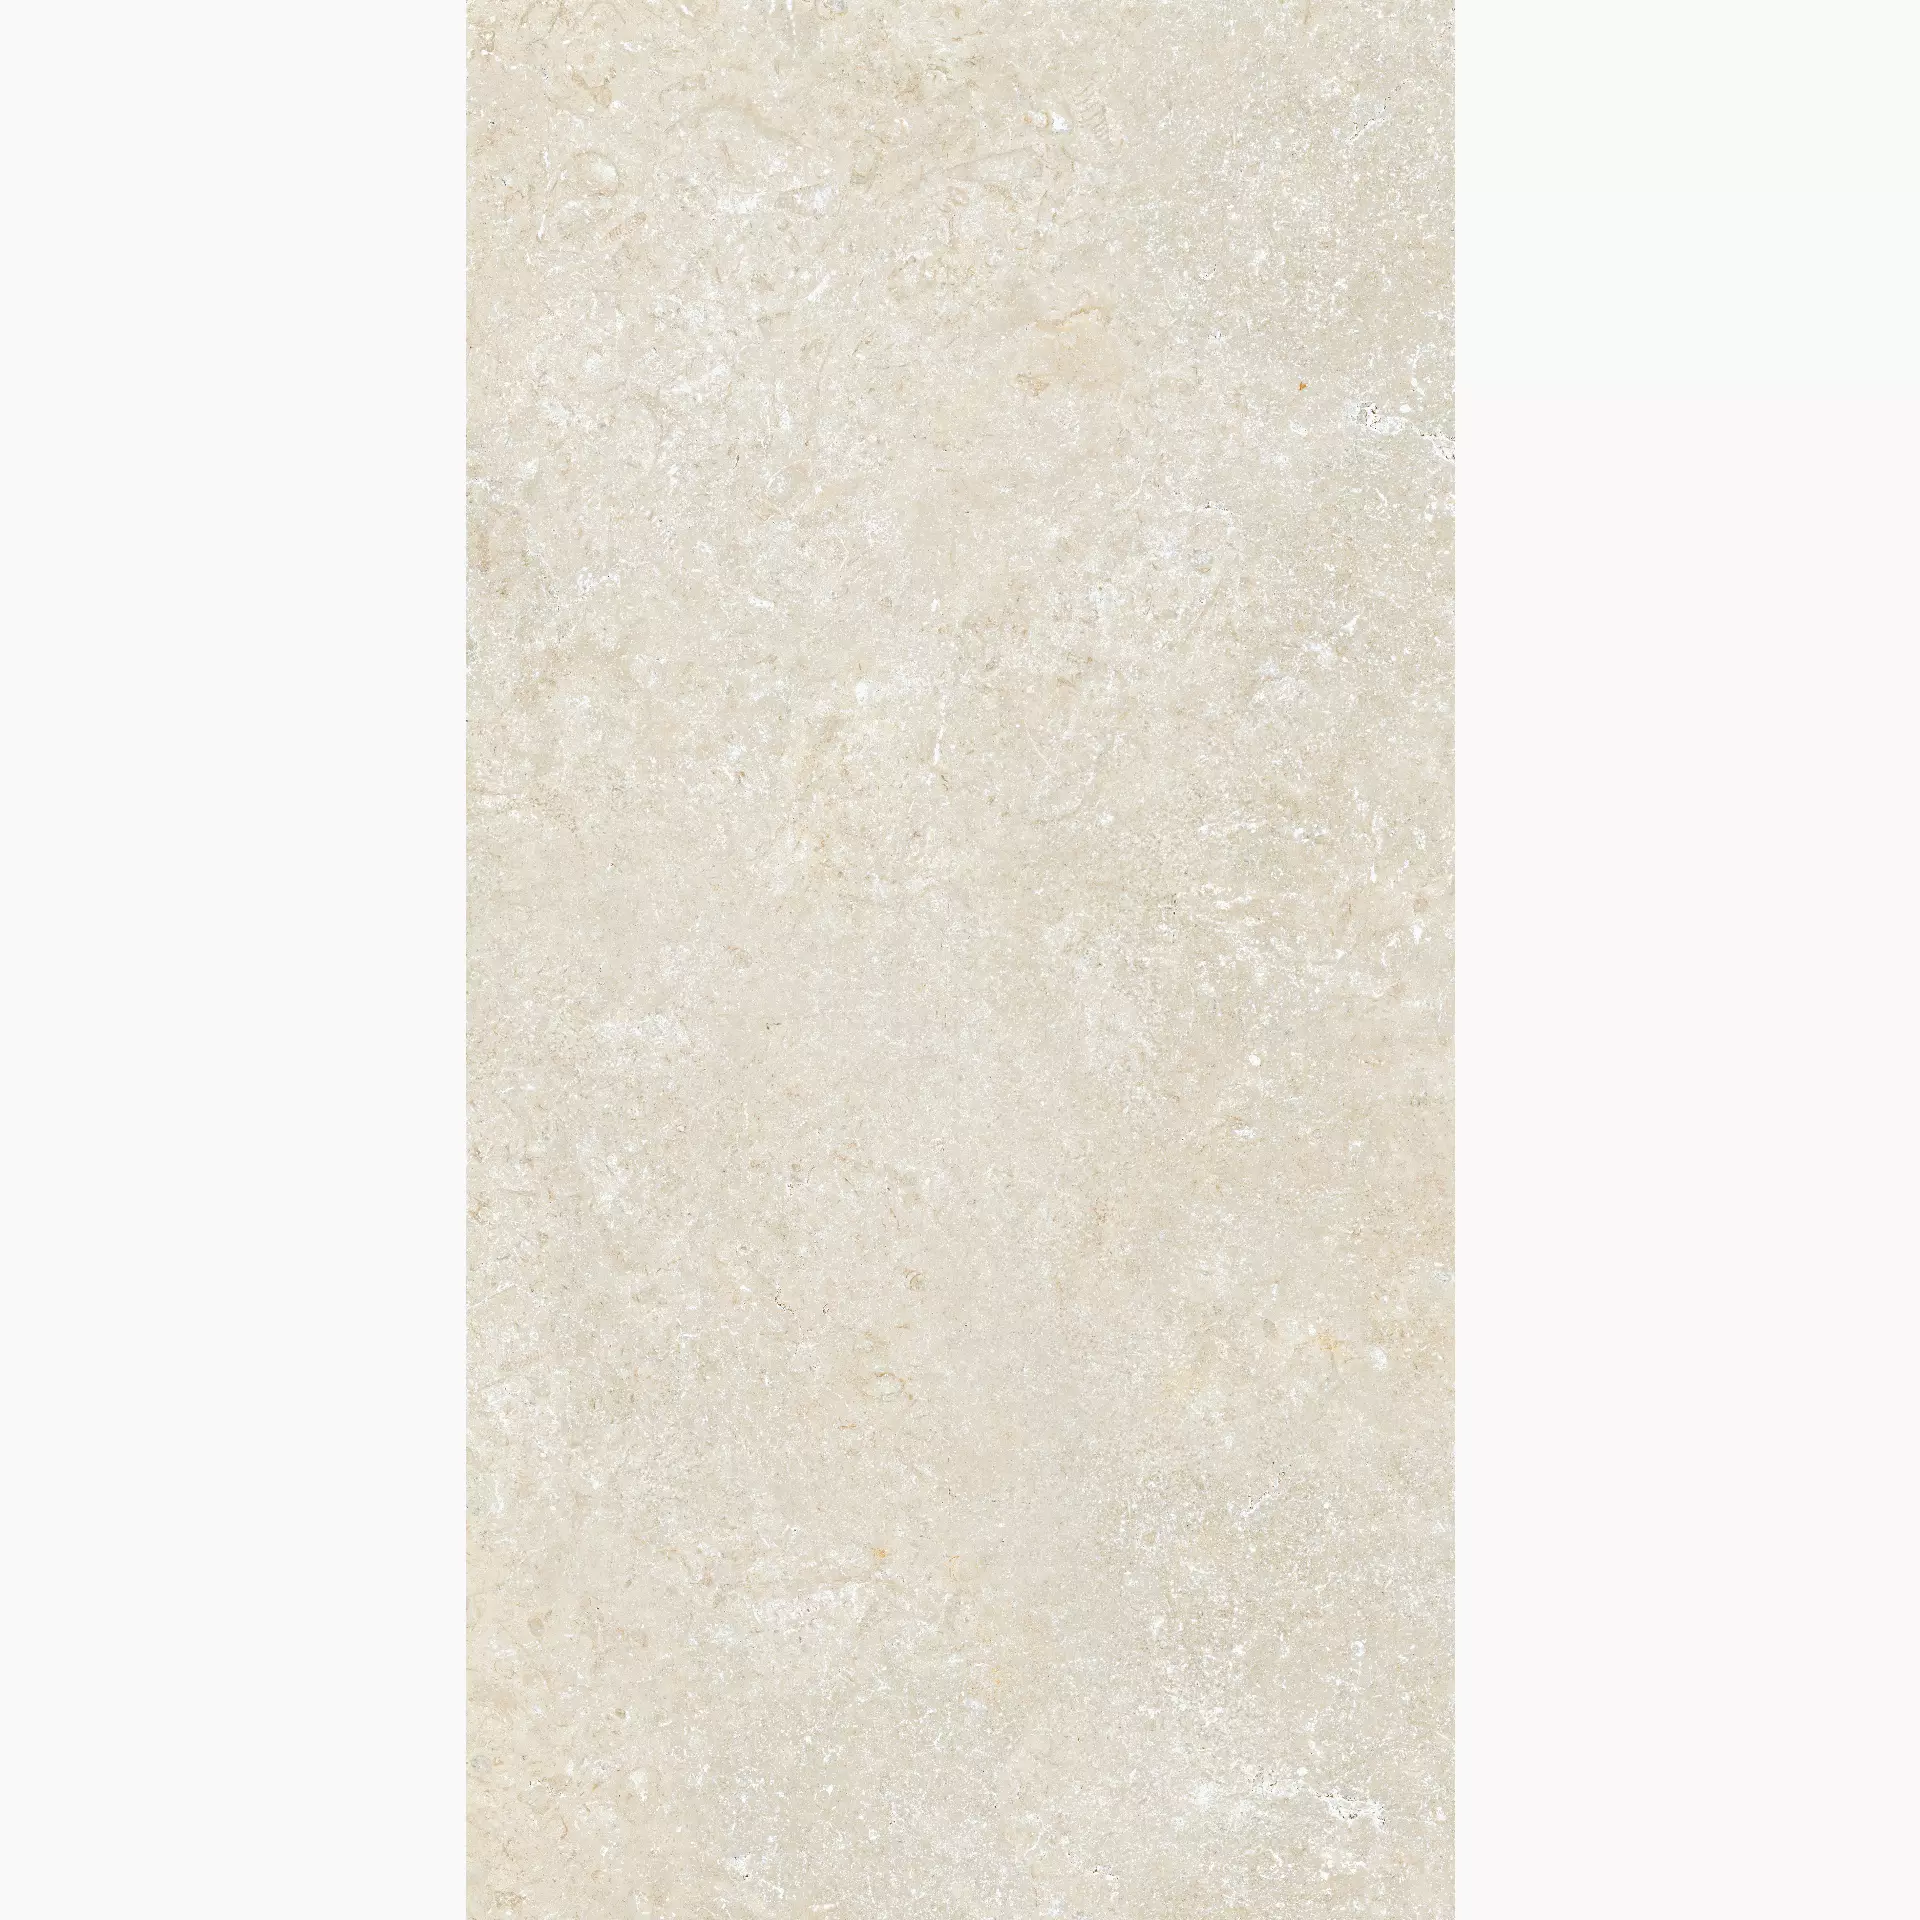 Cottodeste Secret Stone Mystery White Naturale Protect Mystery White EG-SS00 antibakteriell natur 30x60cm rektifiziert 14mm